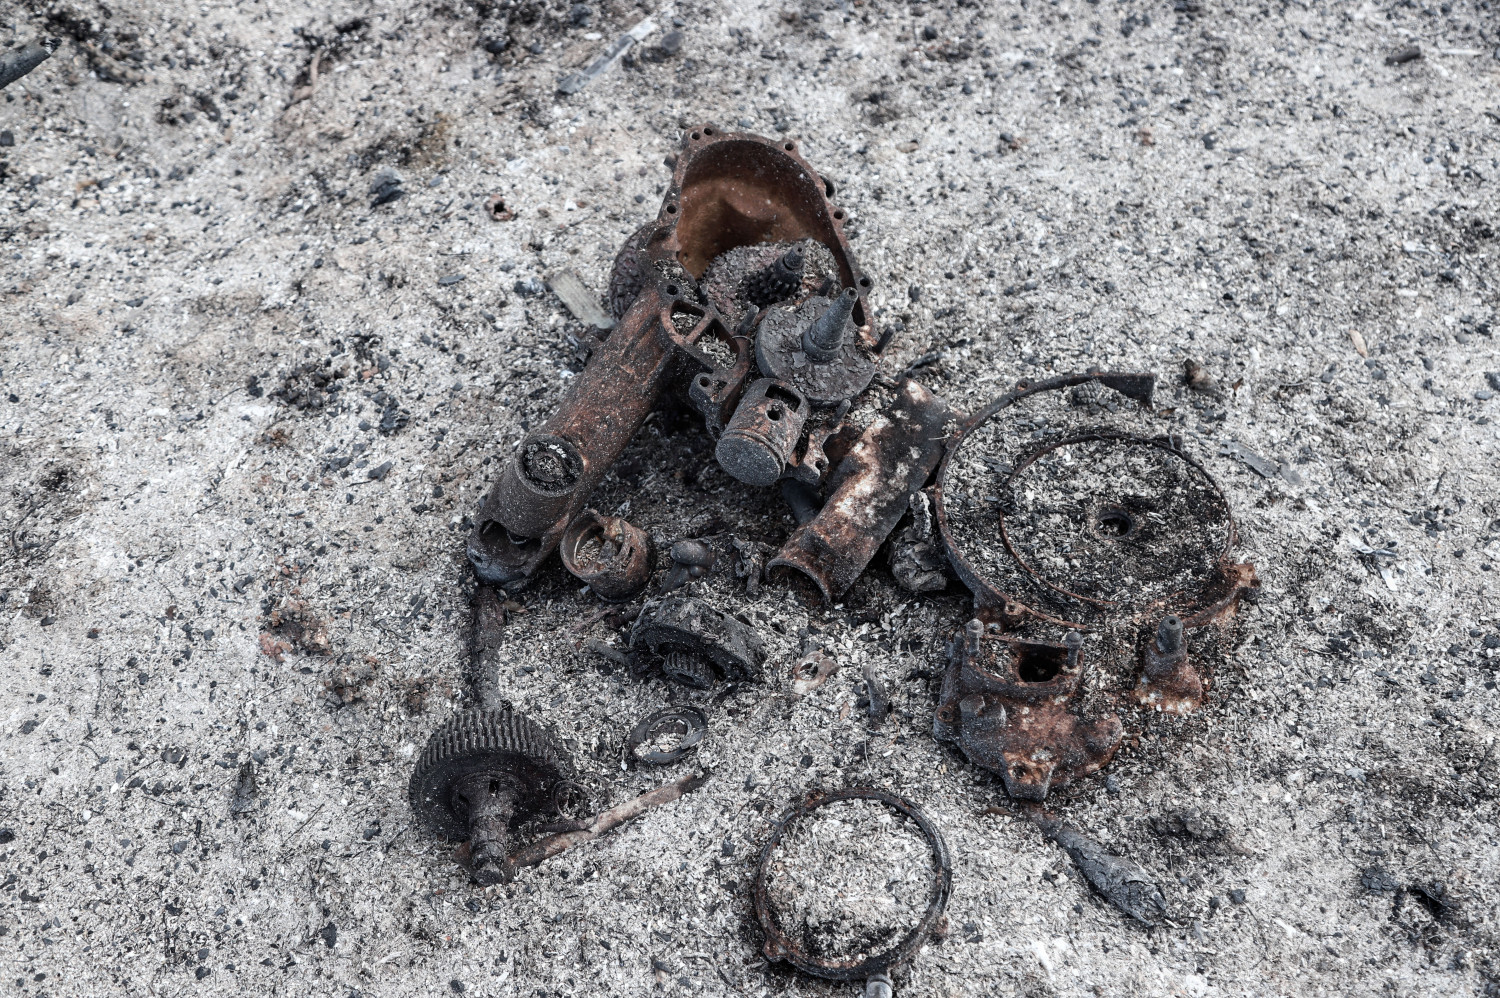 Ύποπτα ευρήματα στην Εύβοια – Βρέθηκαν στουπιά και γκαζάκια – Άγνωστο αν σχετίζονται με τη φωτιά